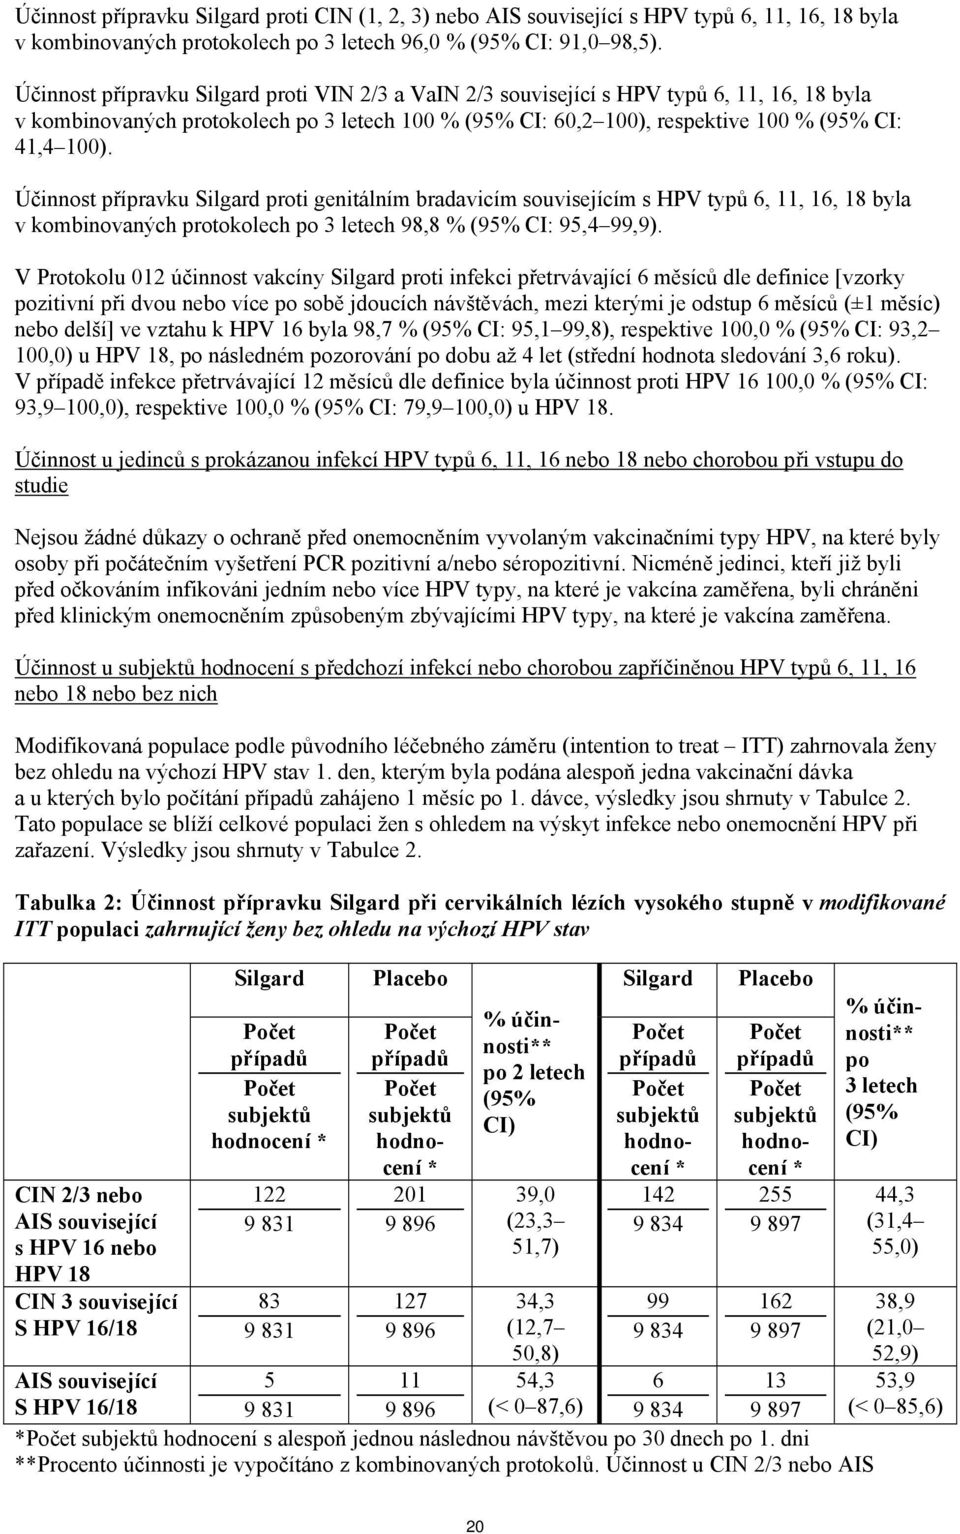 Účinnost přípravku Silgard proti genitálním bradavicím souvisejícím s HPV typů 6, 11, 16, 18 byla v kombinovaných protokolech po 3 letech 98,8 % (95% CI: 95,4 99,9).